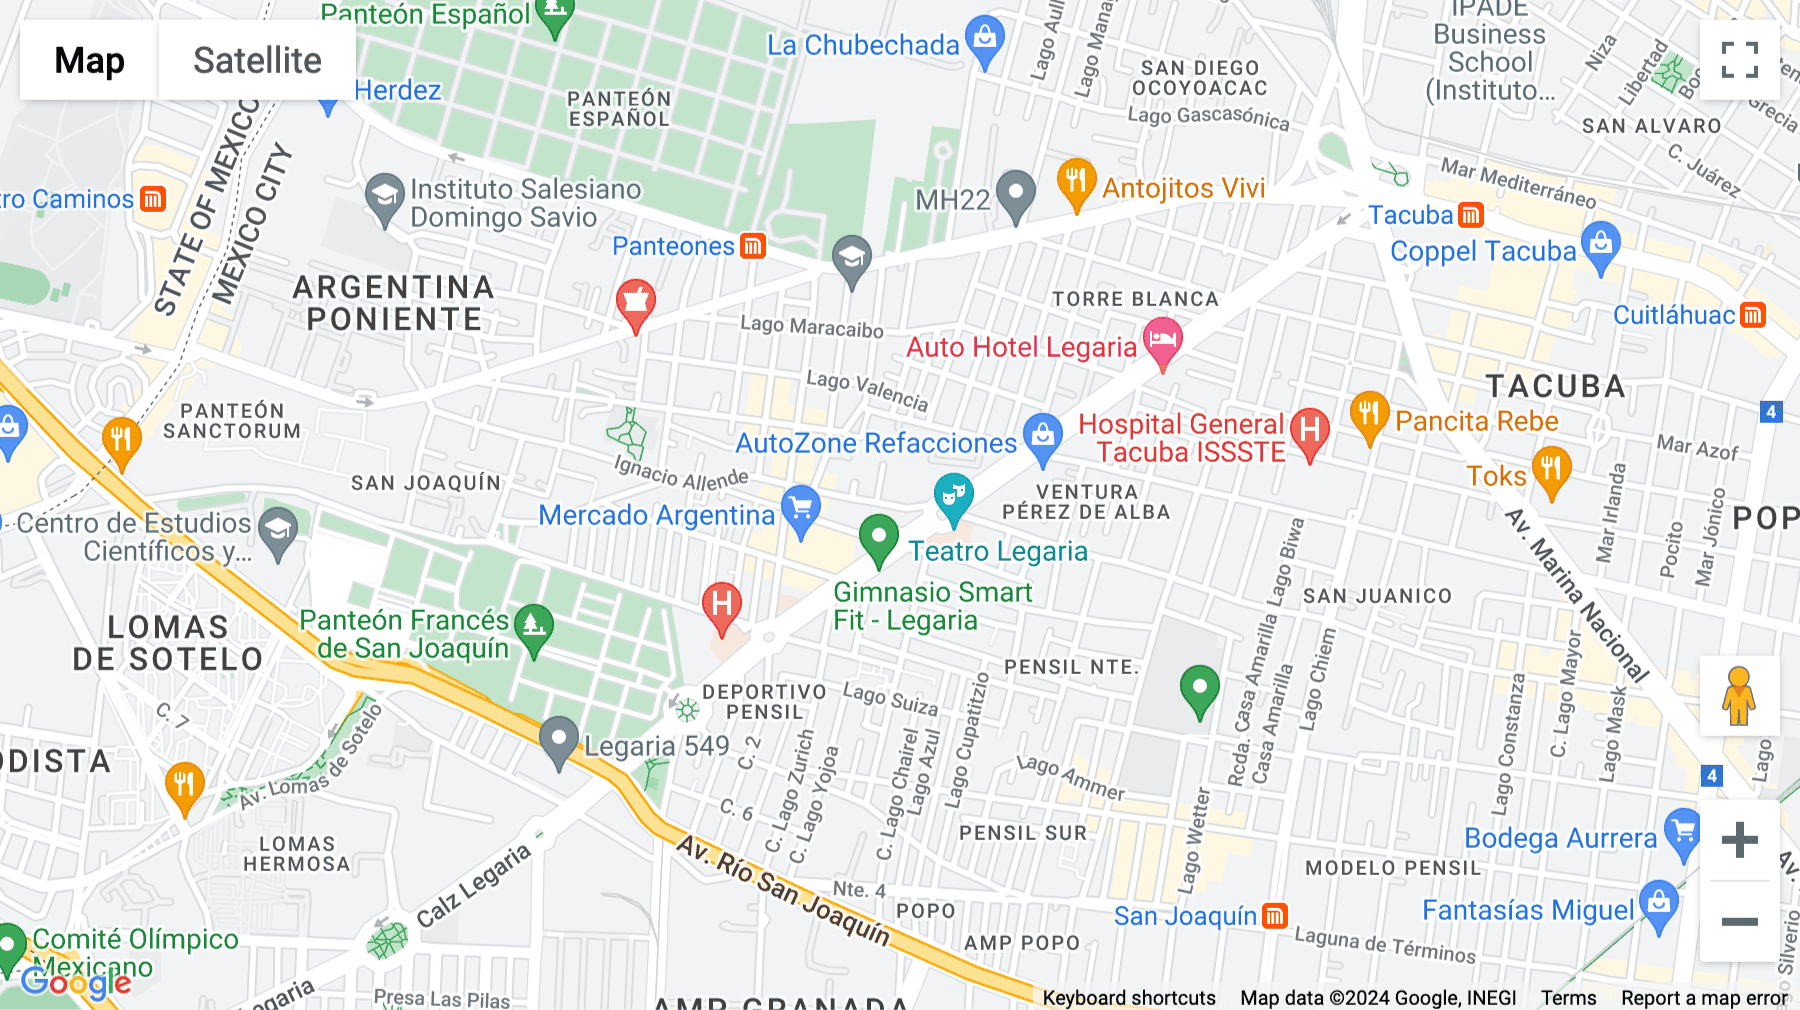 Click for interative map of Ignacio Allende 21, Amplicación Torre Blanca, Mexico City